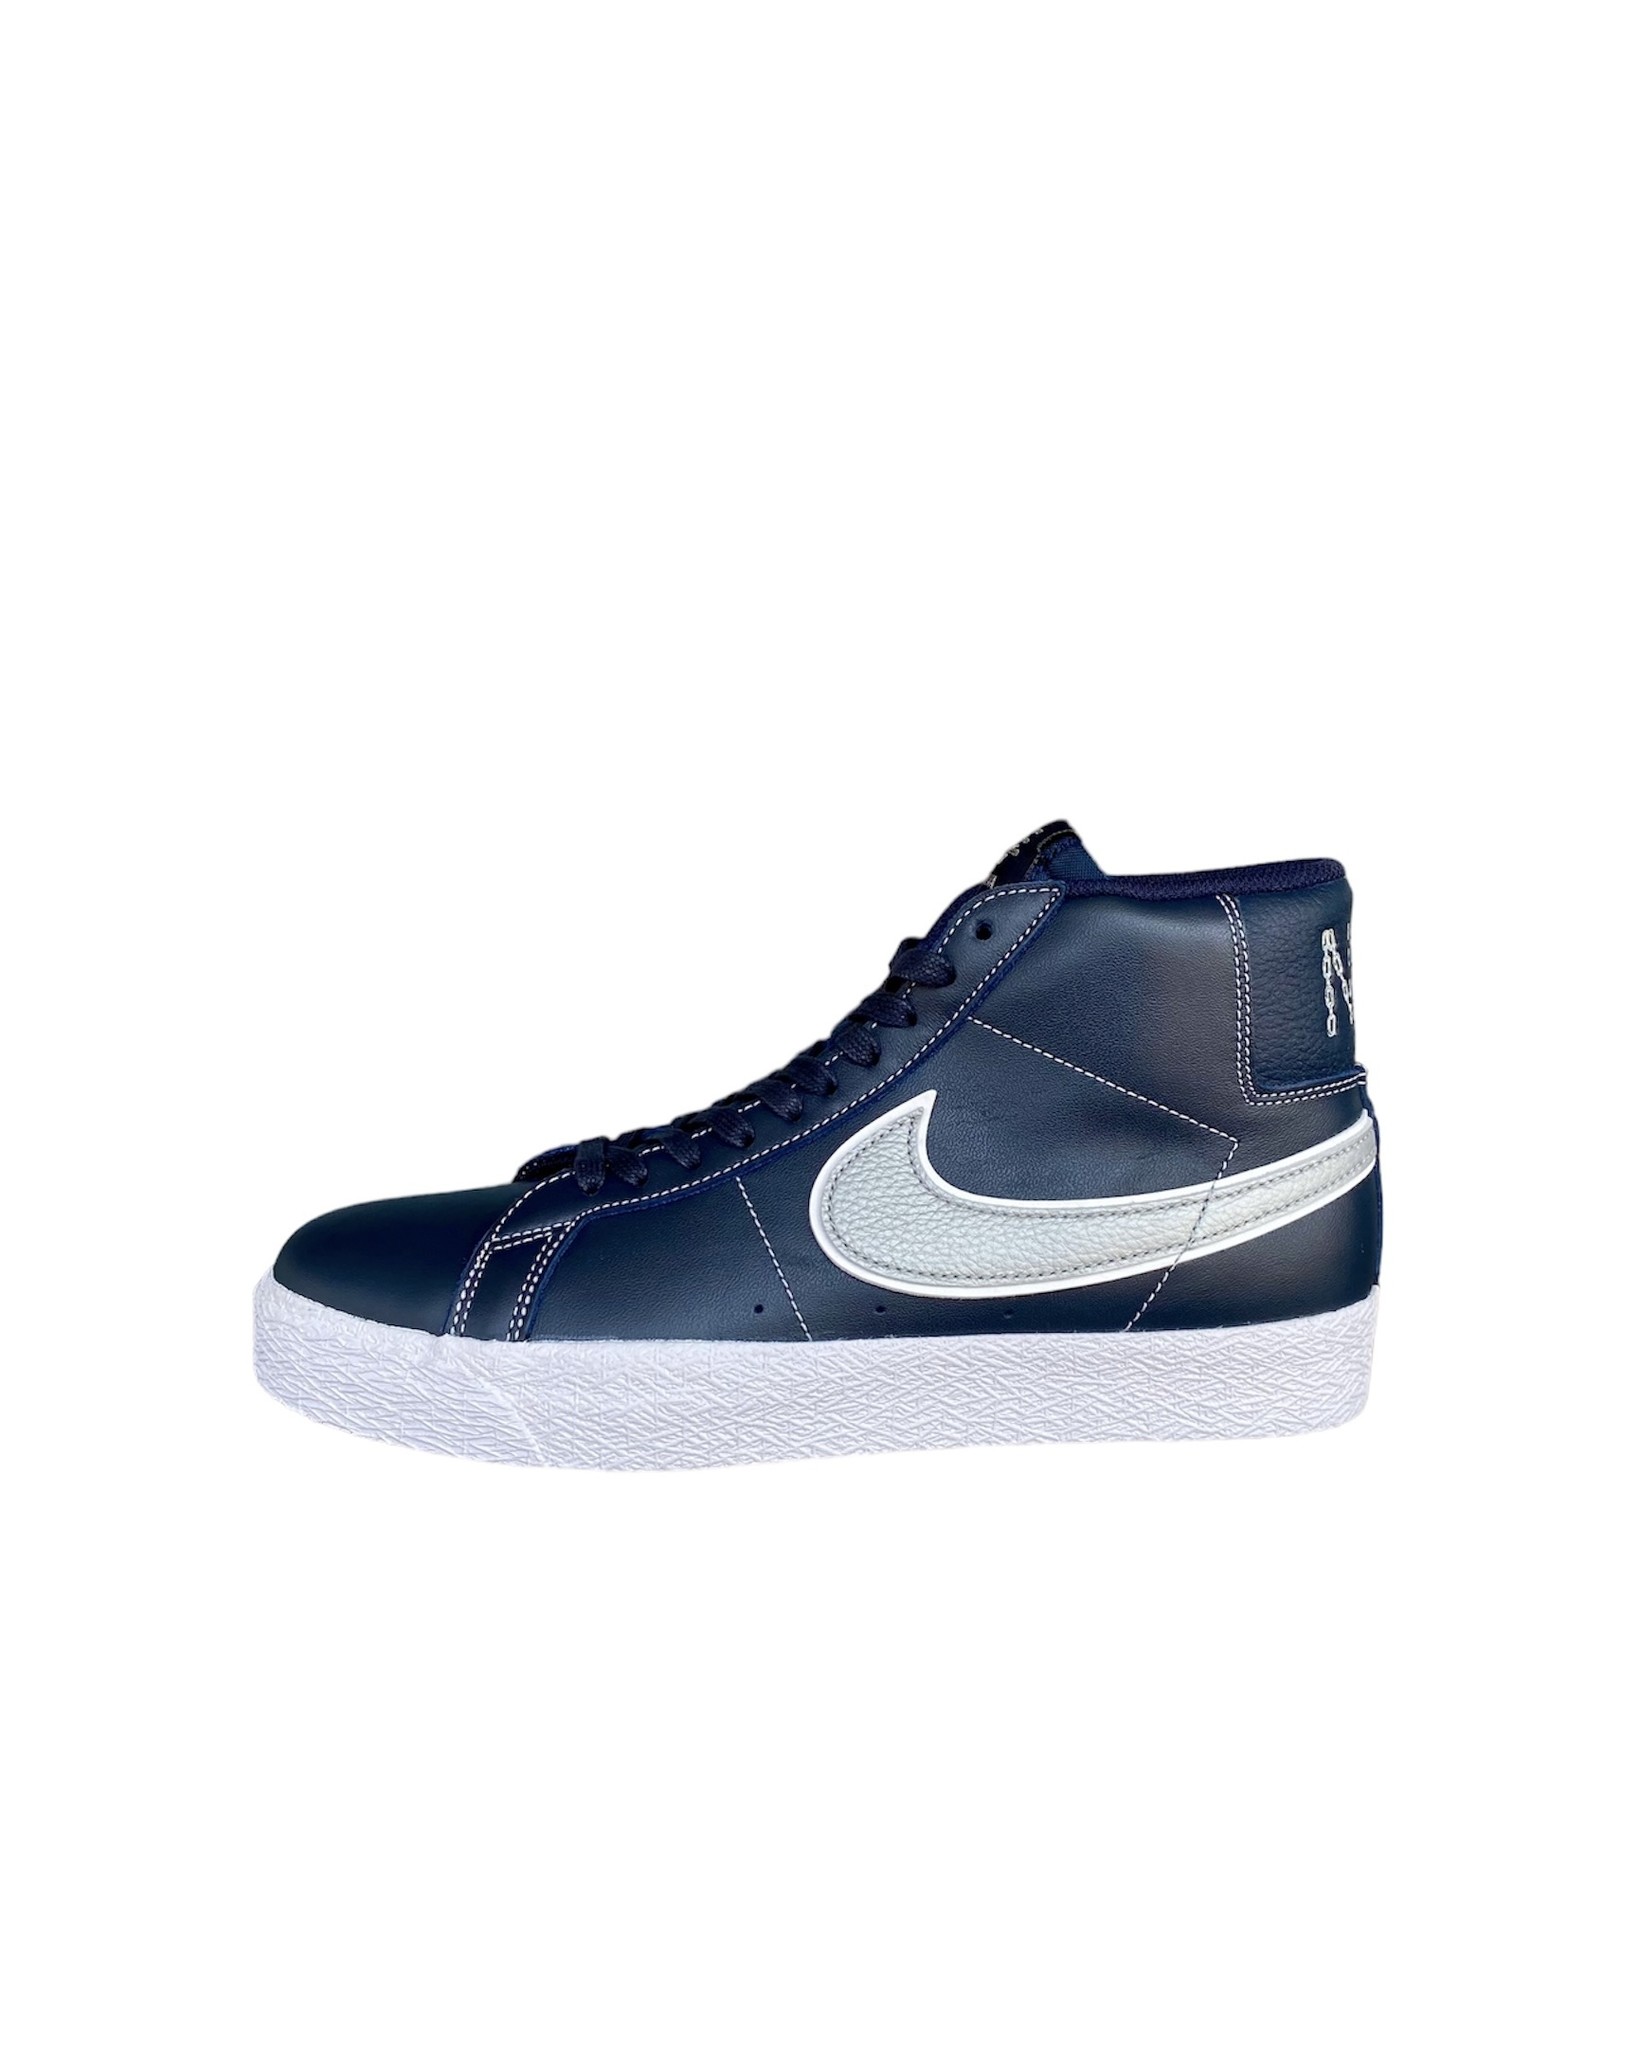 Snor Zachte voeten infrastructuur Nike Zoom Blazer Mid (Mason) QS - Pawnshop Skate